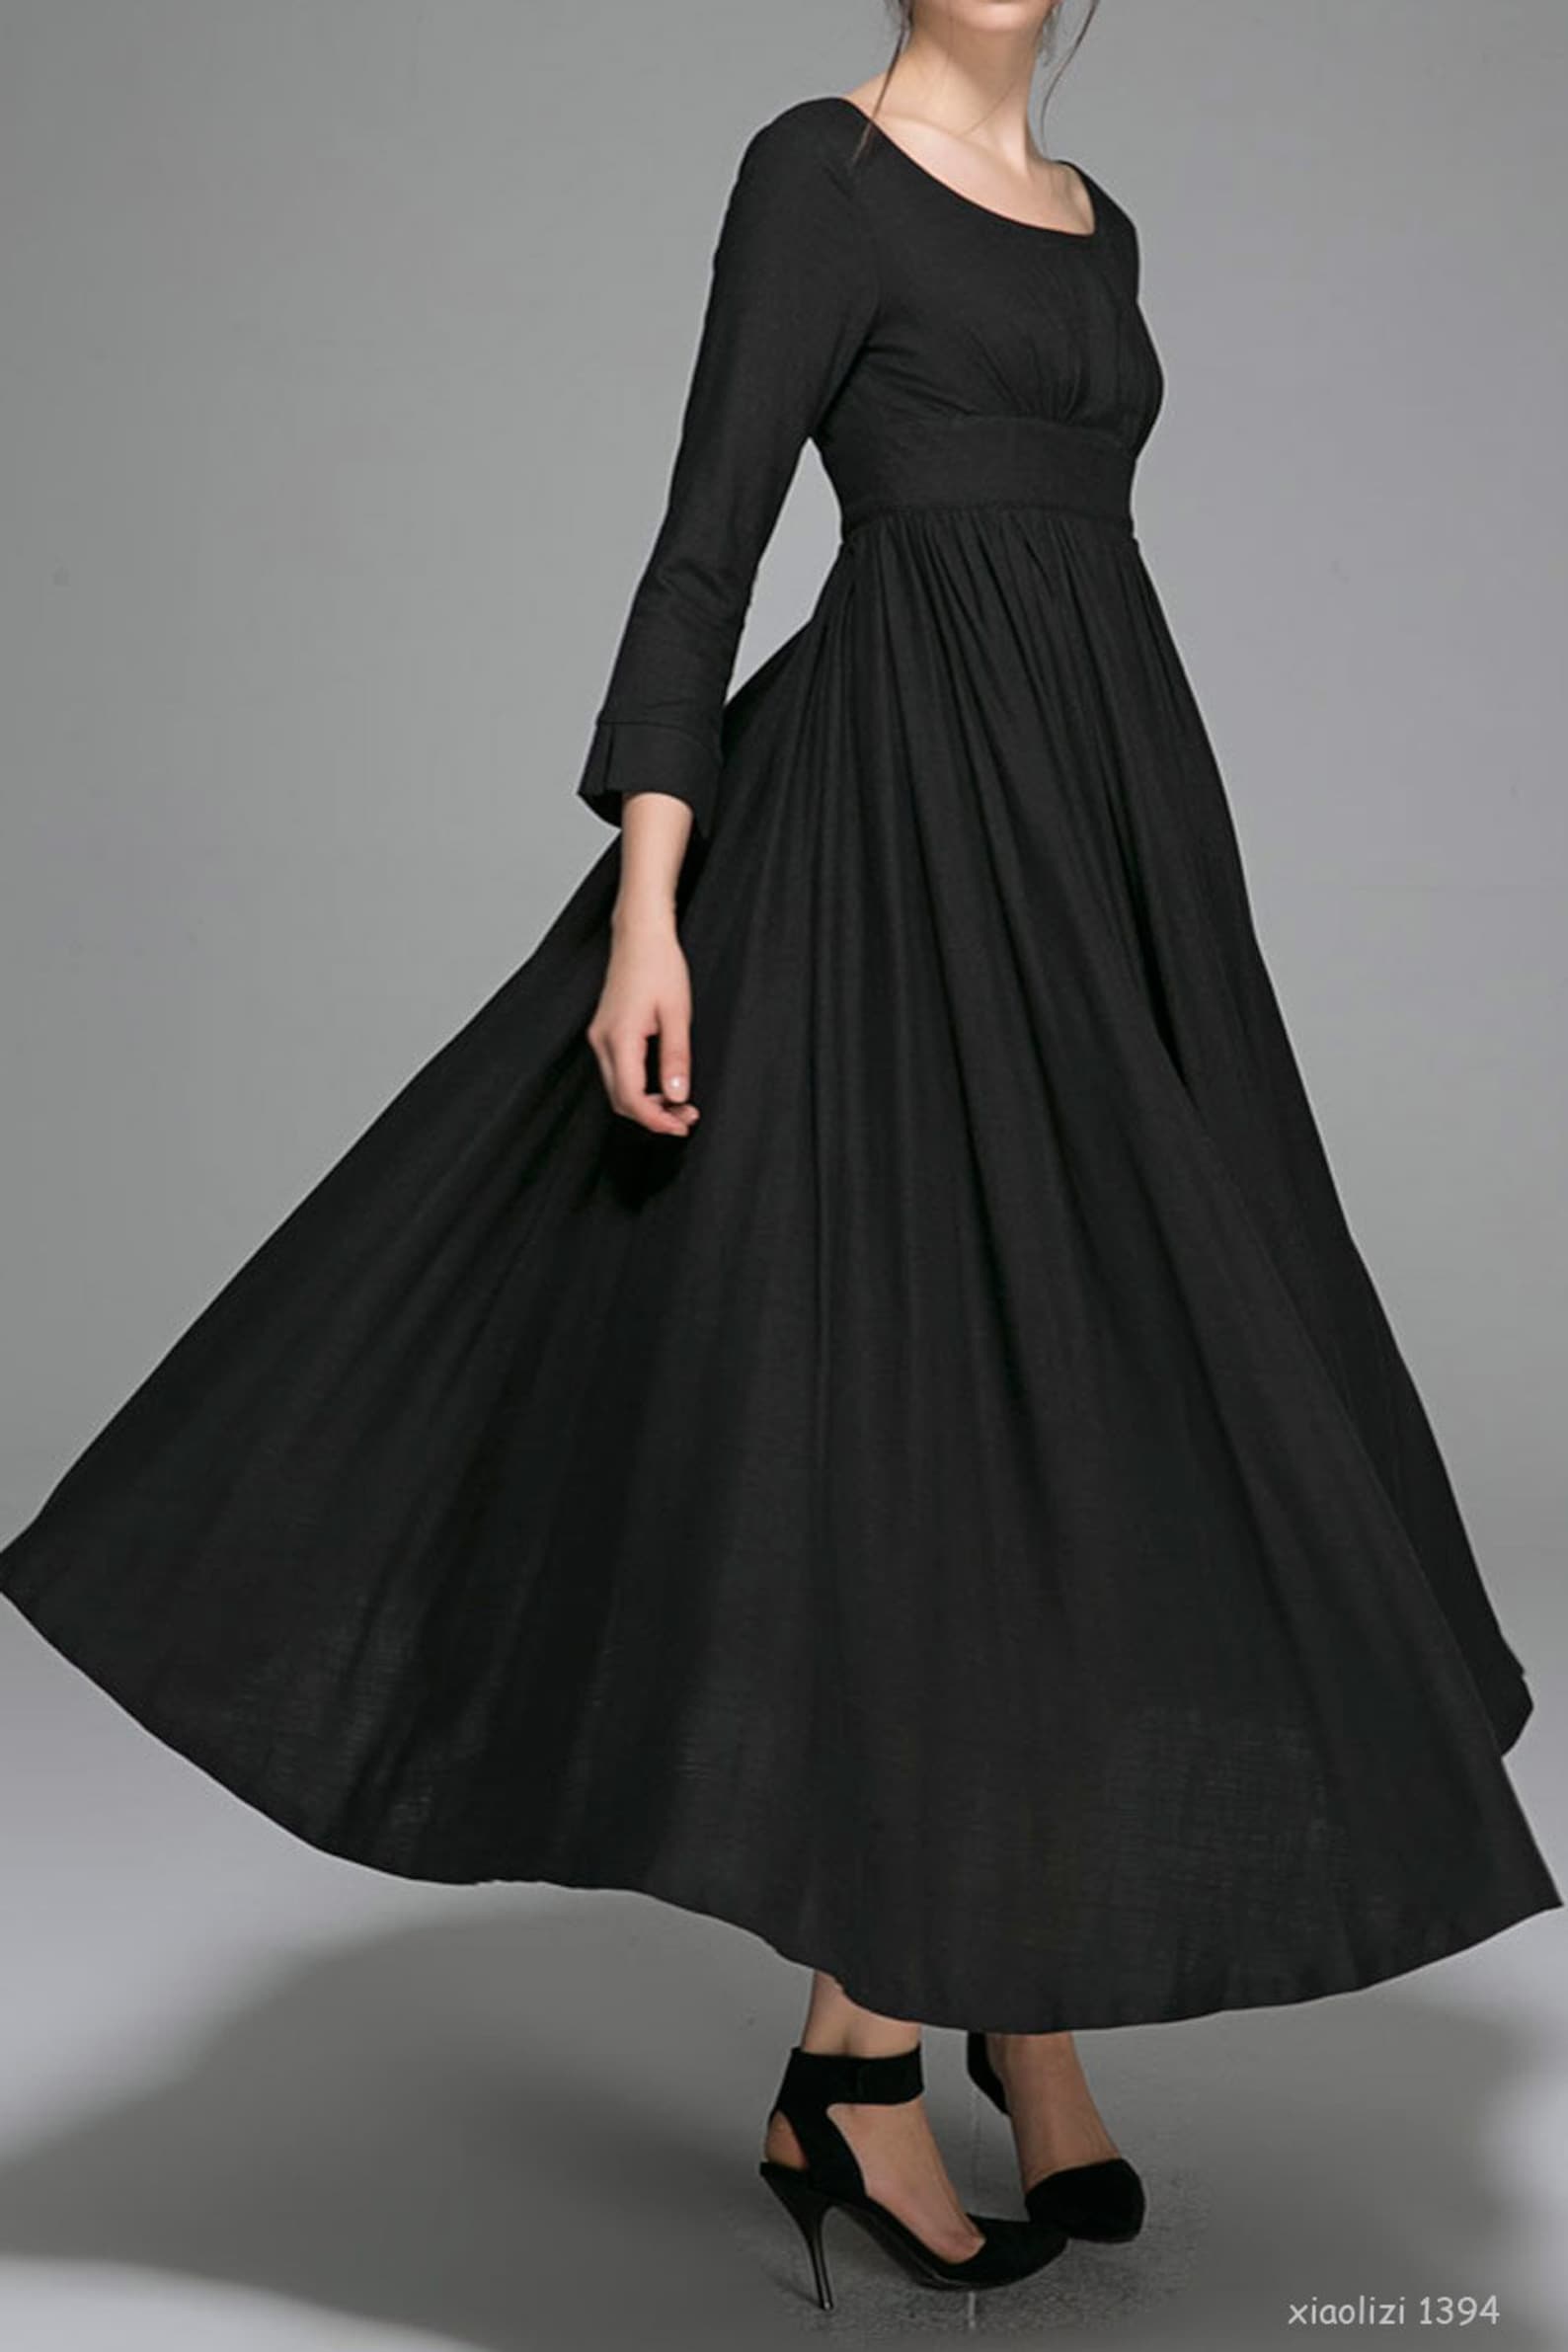 Empire Waist Dress Vintage Style Maxi Dress Black Linen - Etsy